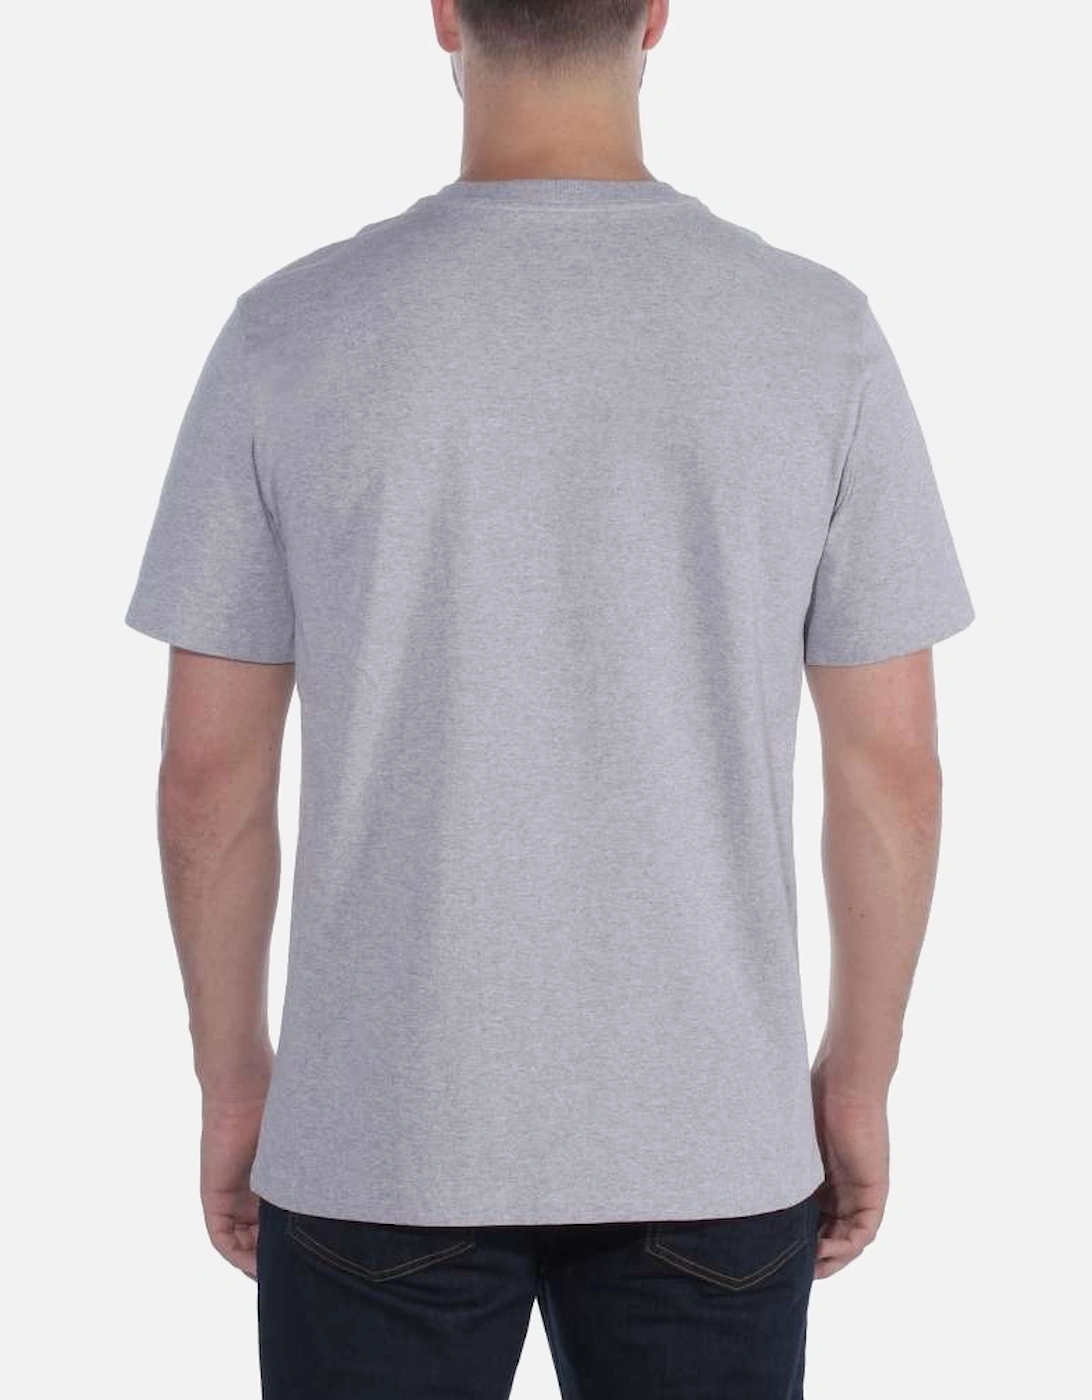 Carhartt Mens Non-Pocket Heavyweight Relaxed Fit T Shirt